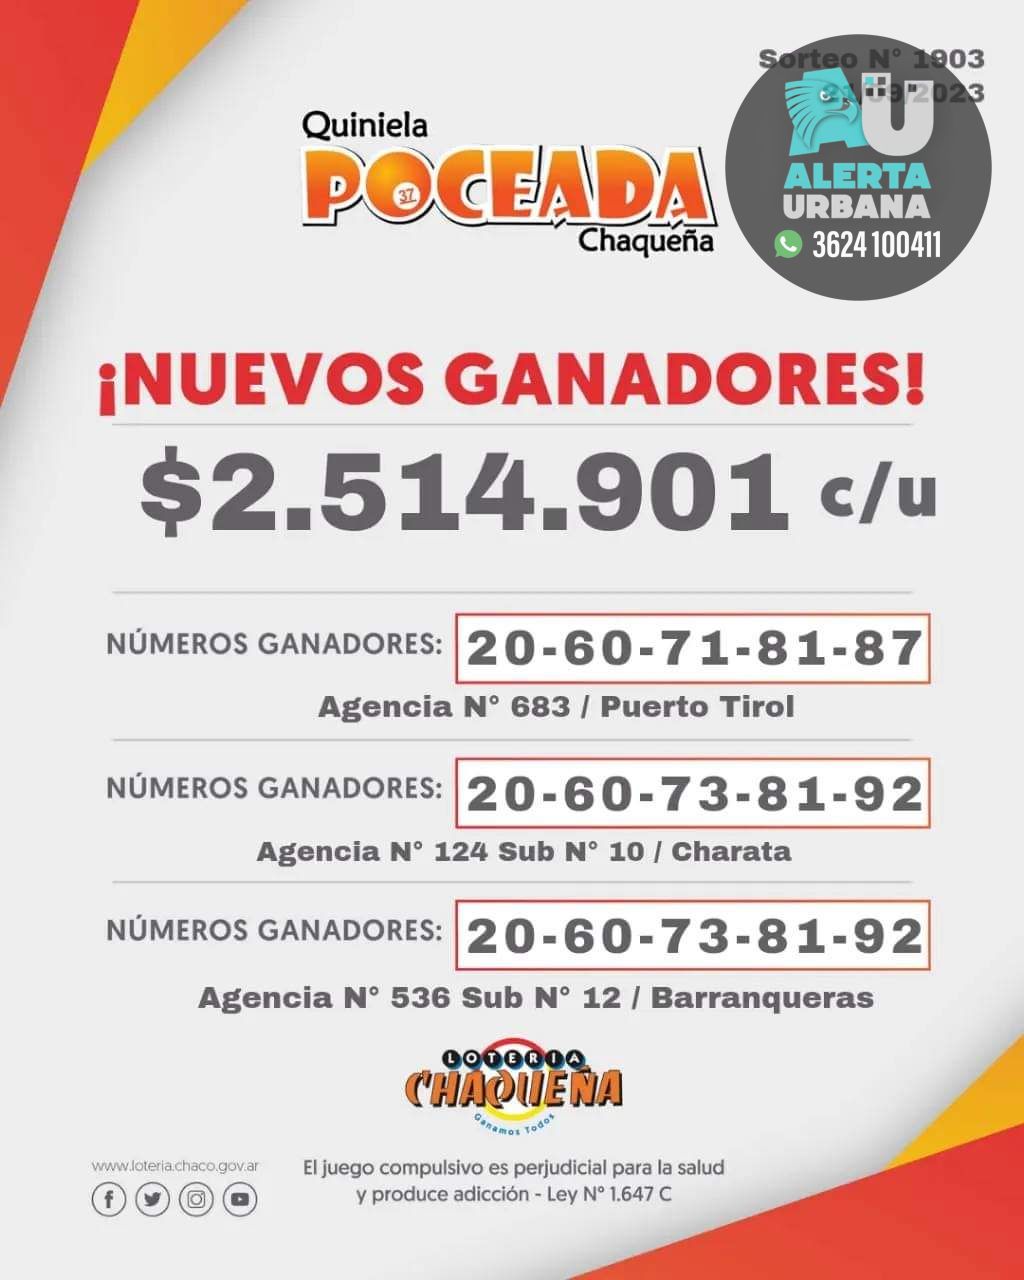 Poceada Chaqueña: tres ganadores en el último sorteo y un nuevo pozo de $8.000.000